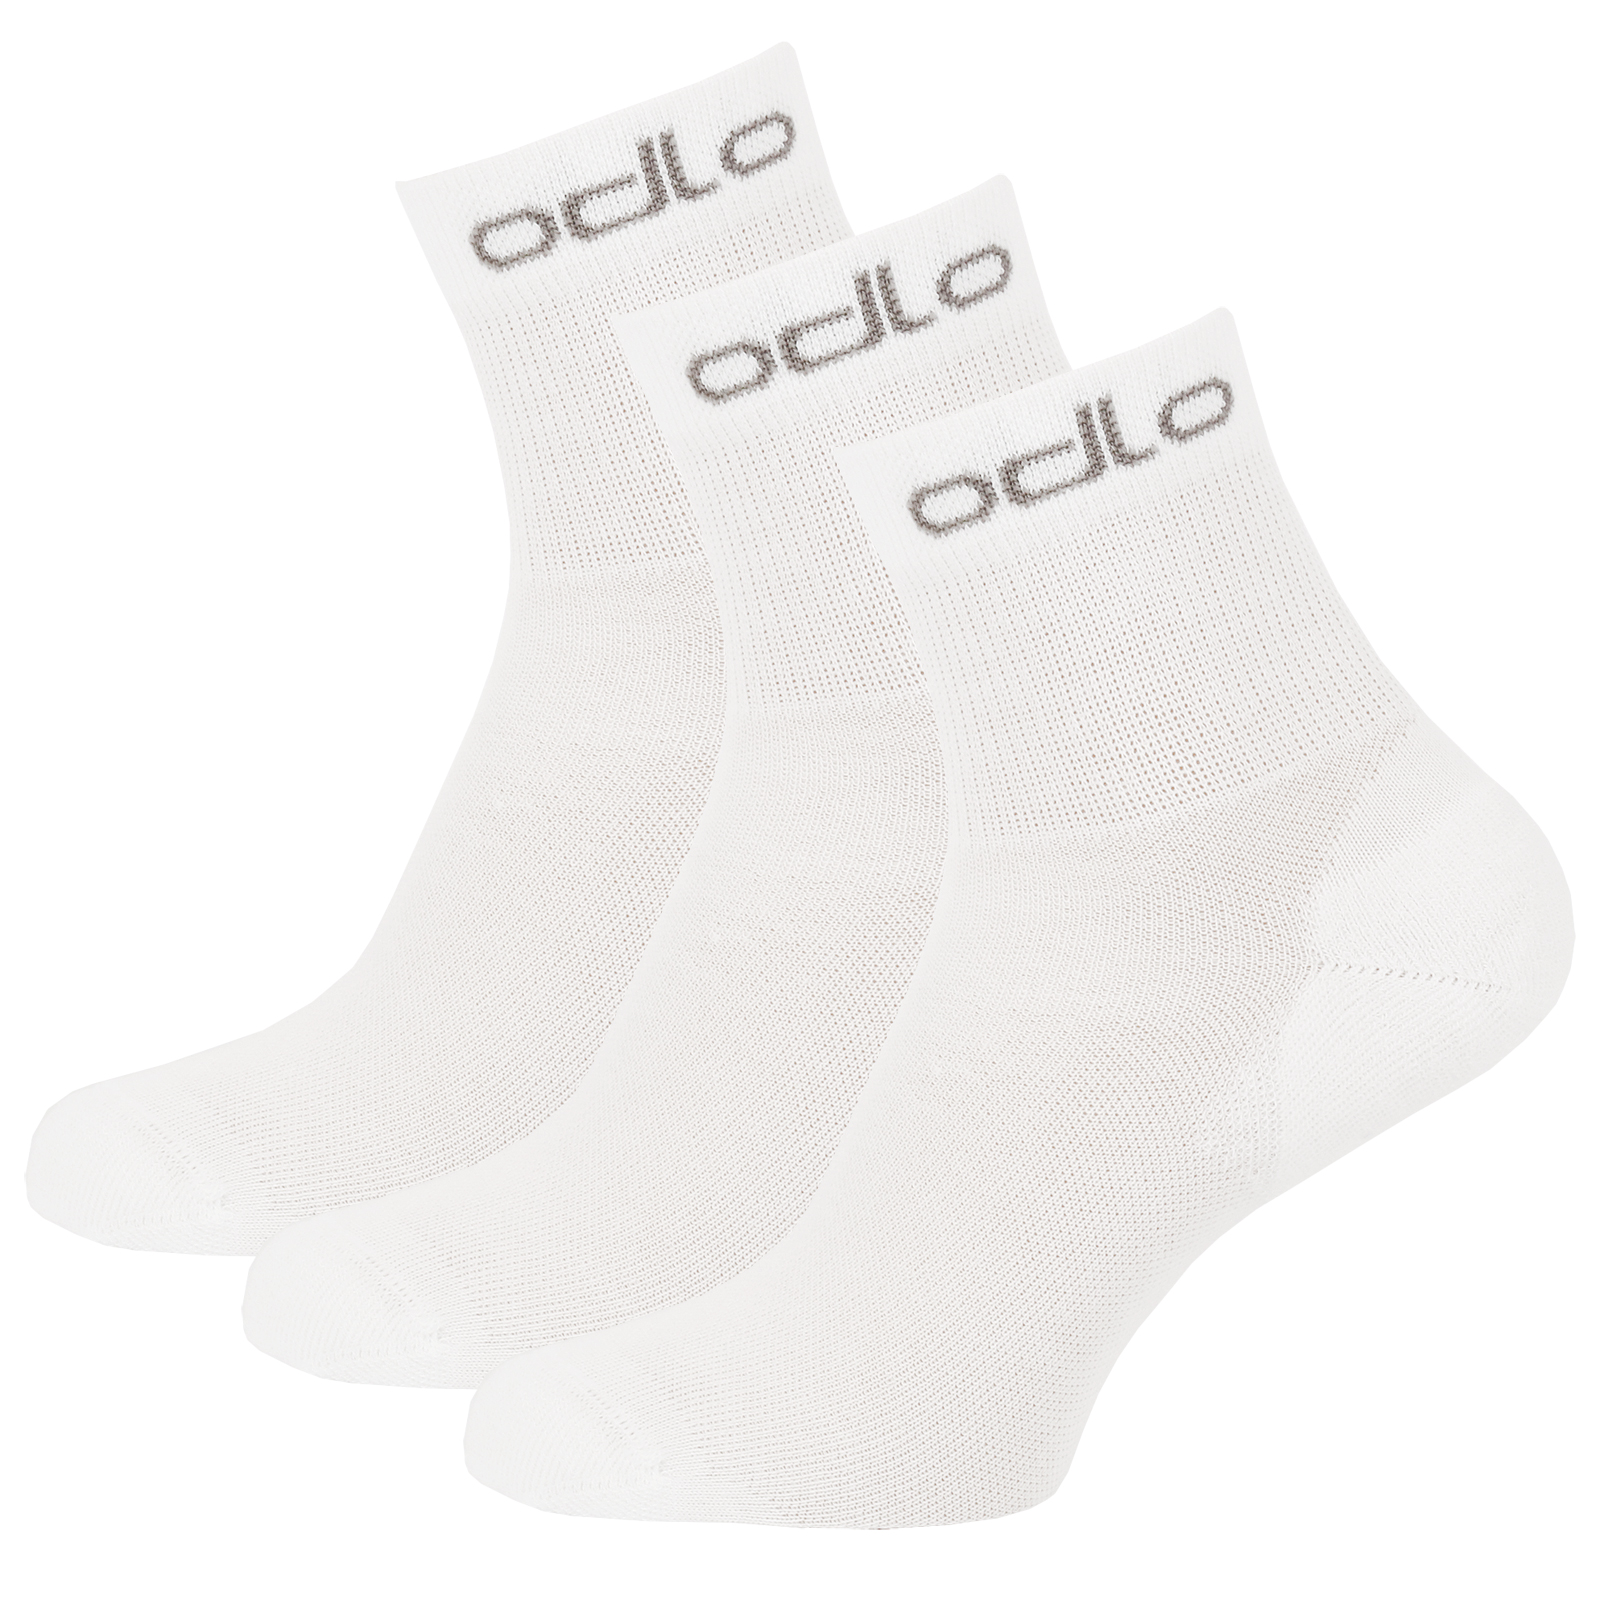 Produktbild von Odlo Active Knöchelsocken - Dreierpack - weiß